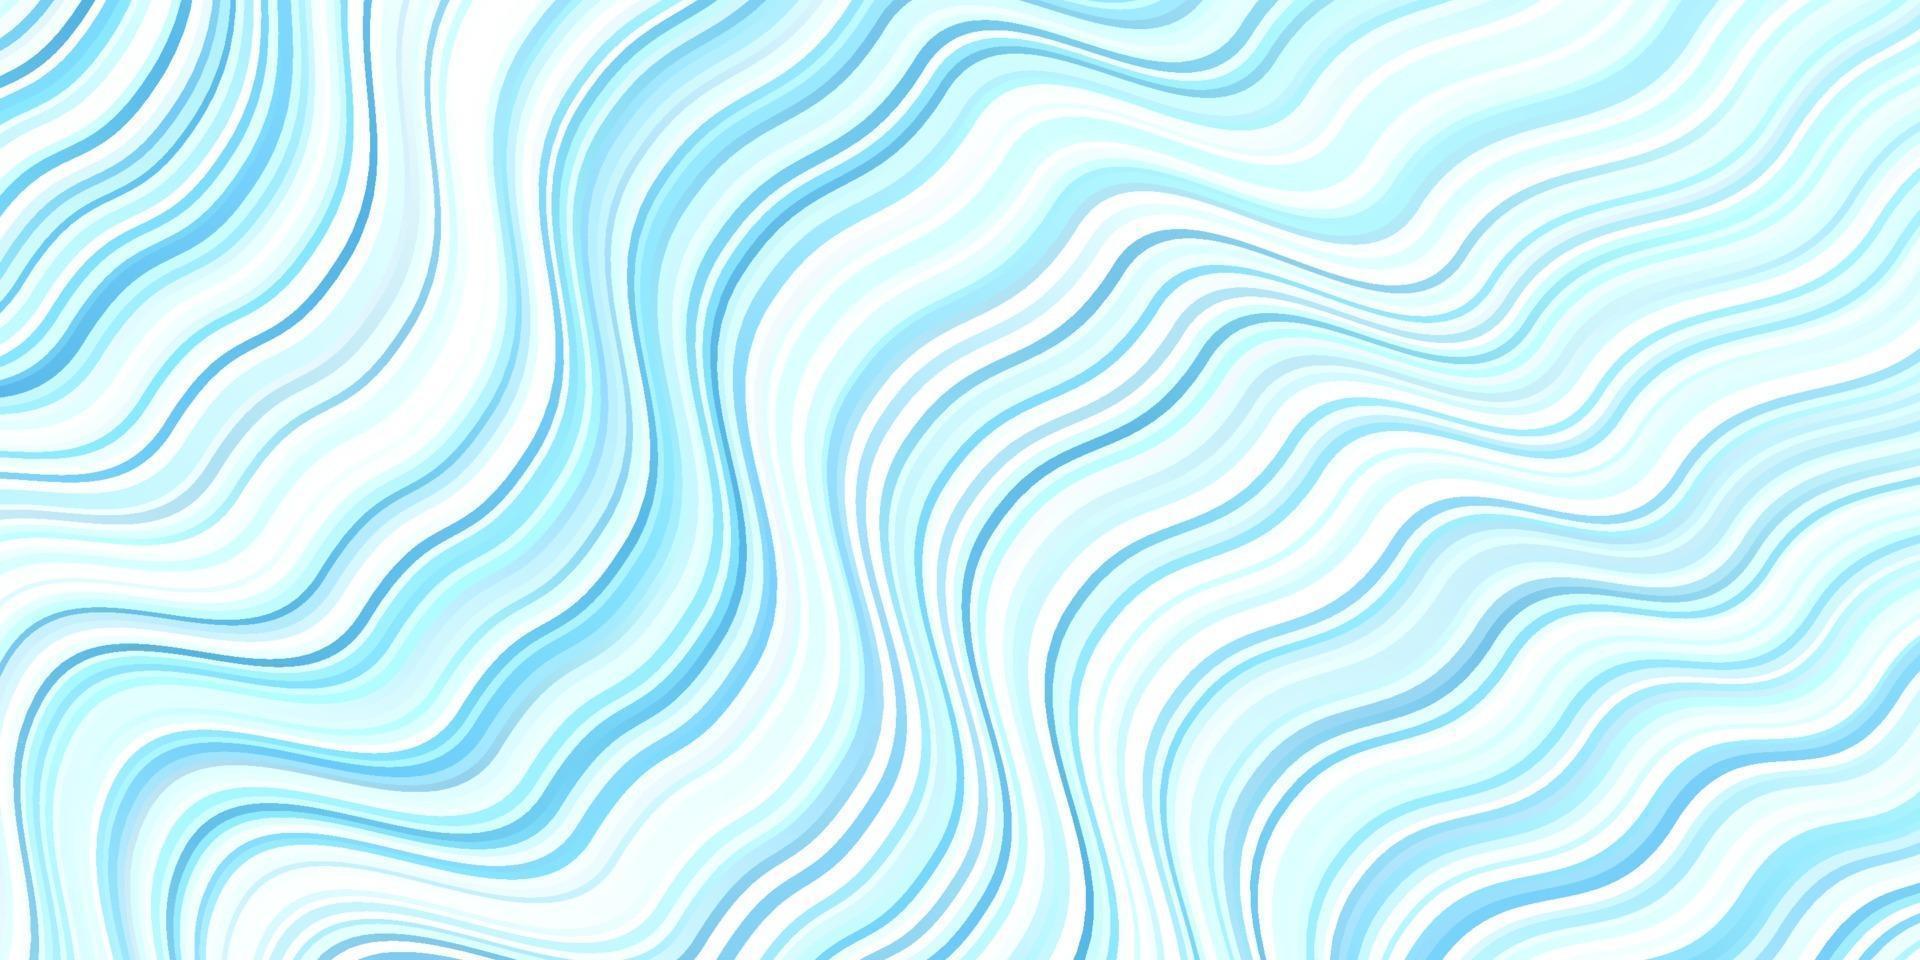 sfondo vettoriale azzurro con curve.